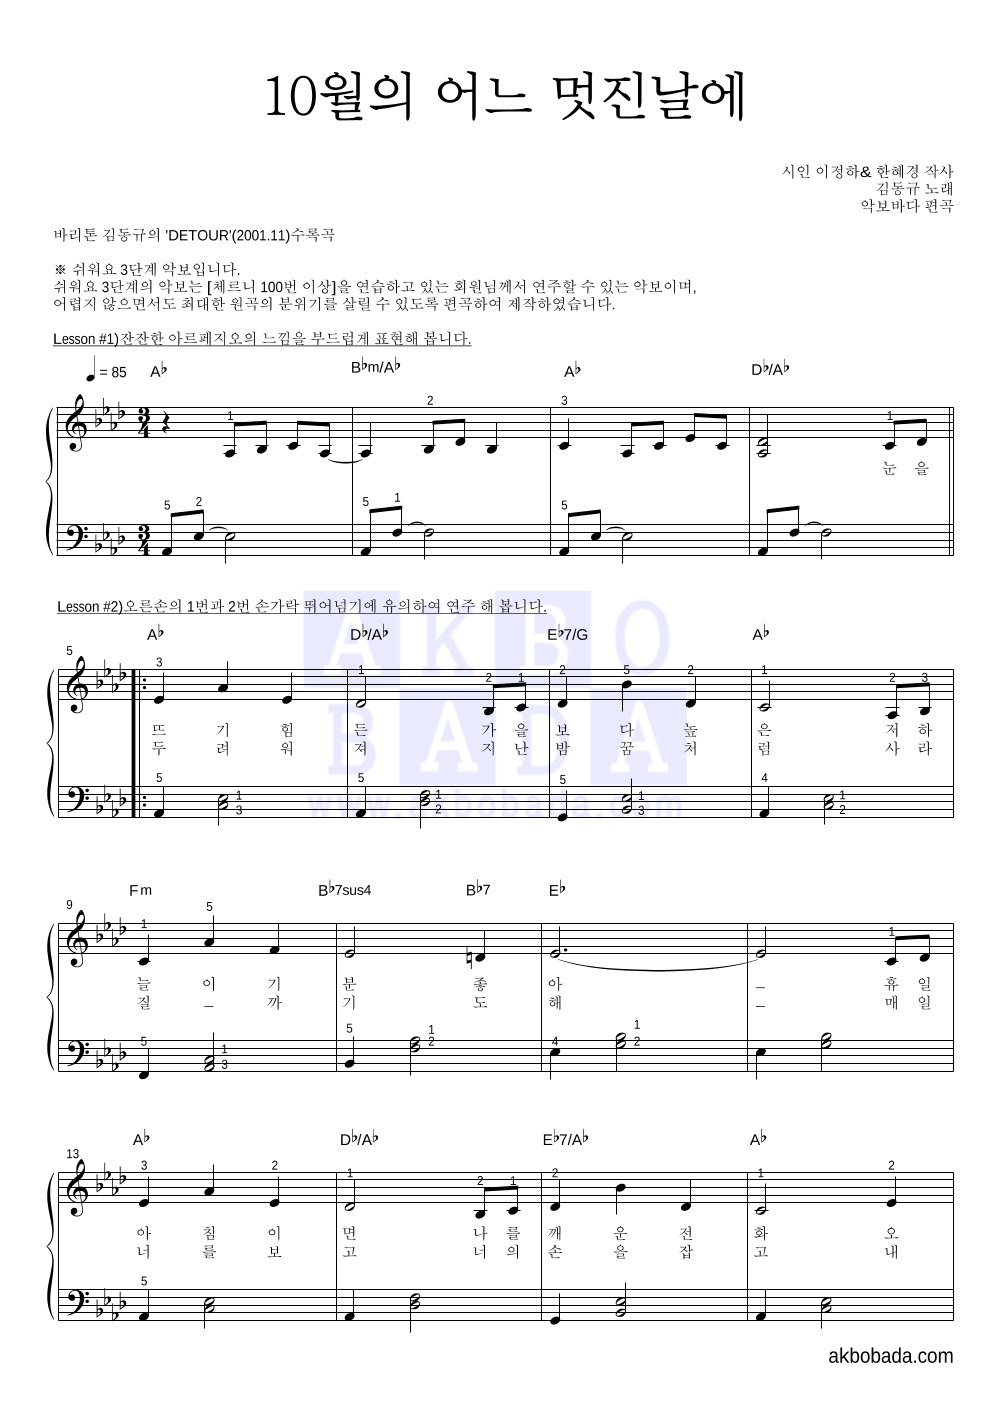 김동규 - 10월의 어느 멋진날에 피아노2단-쉬워요 악보 